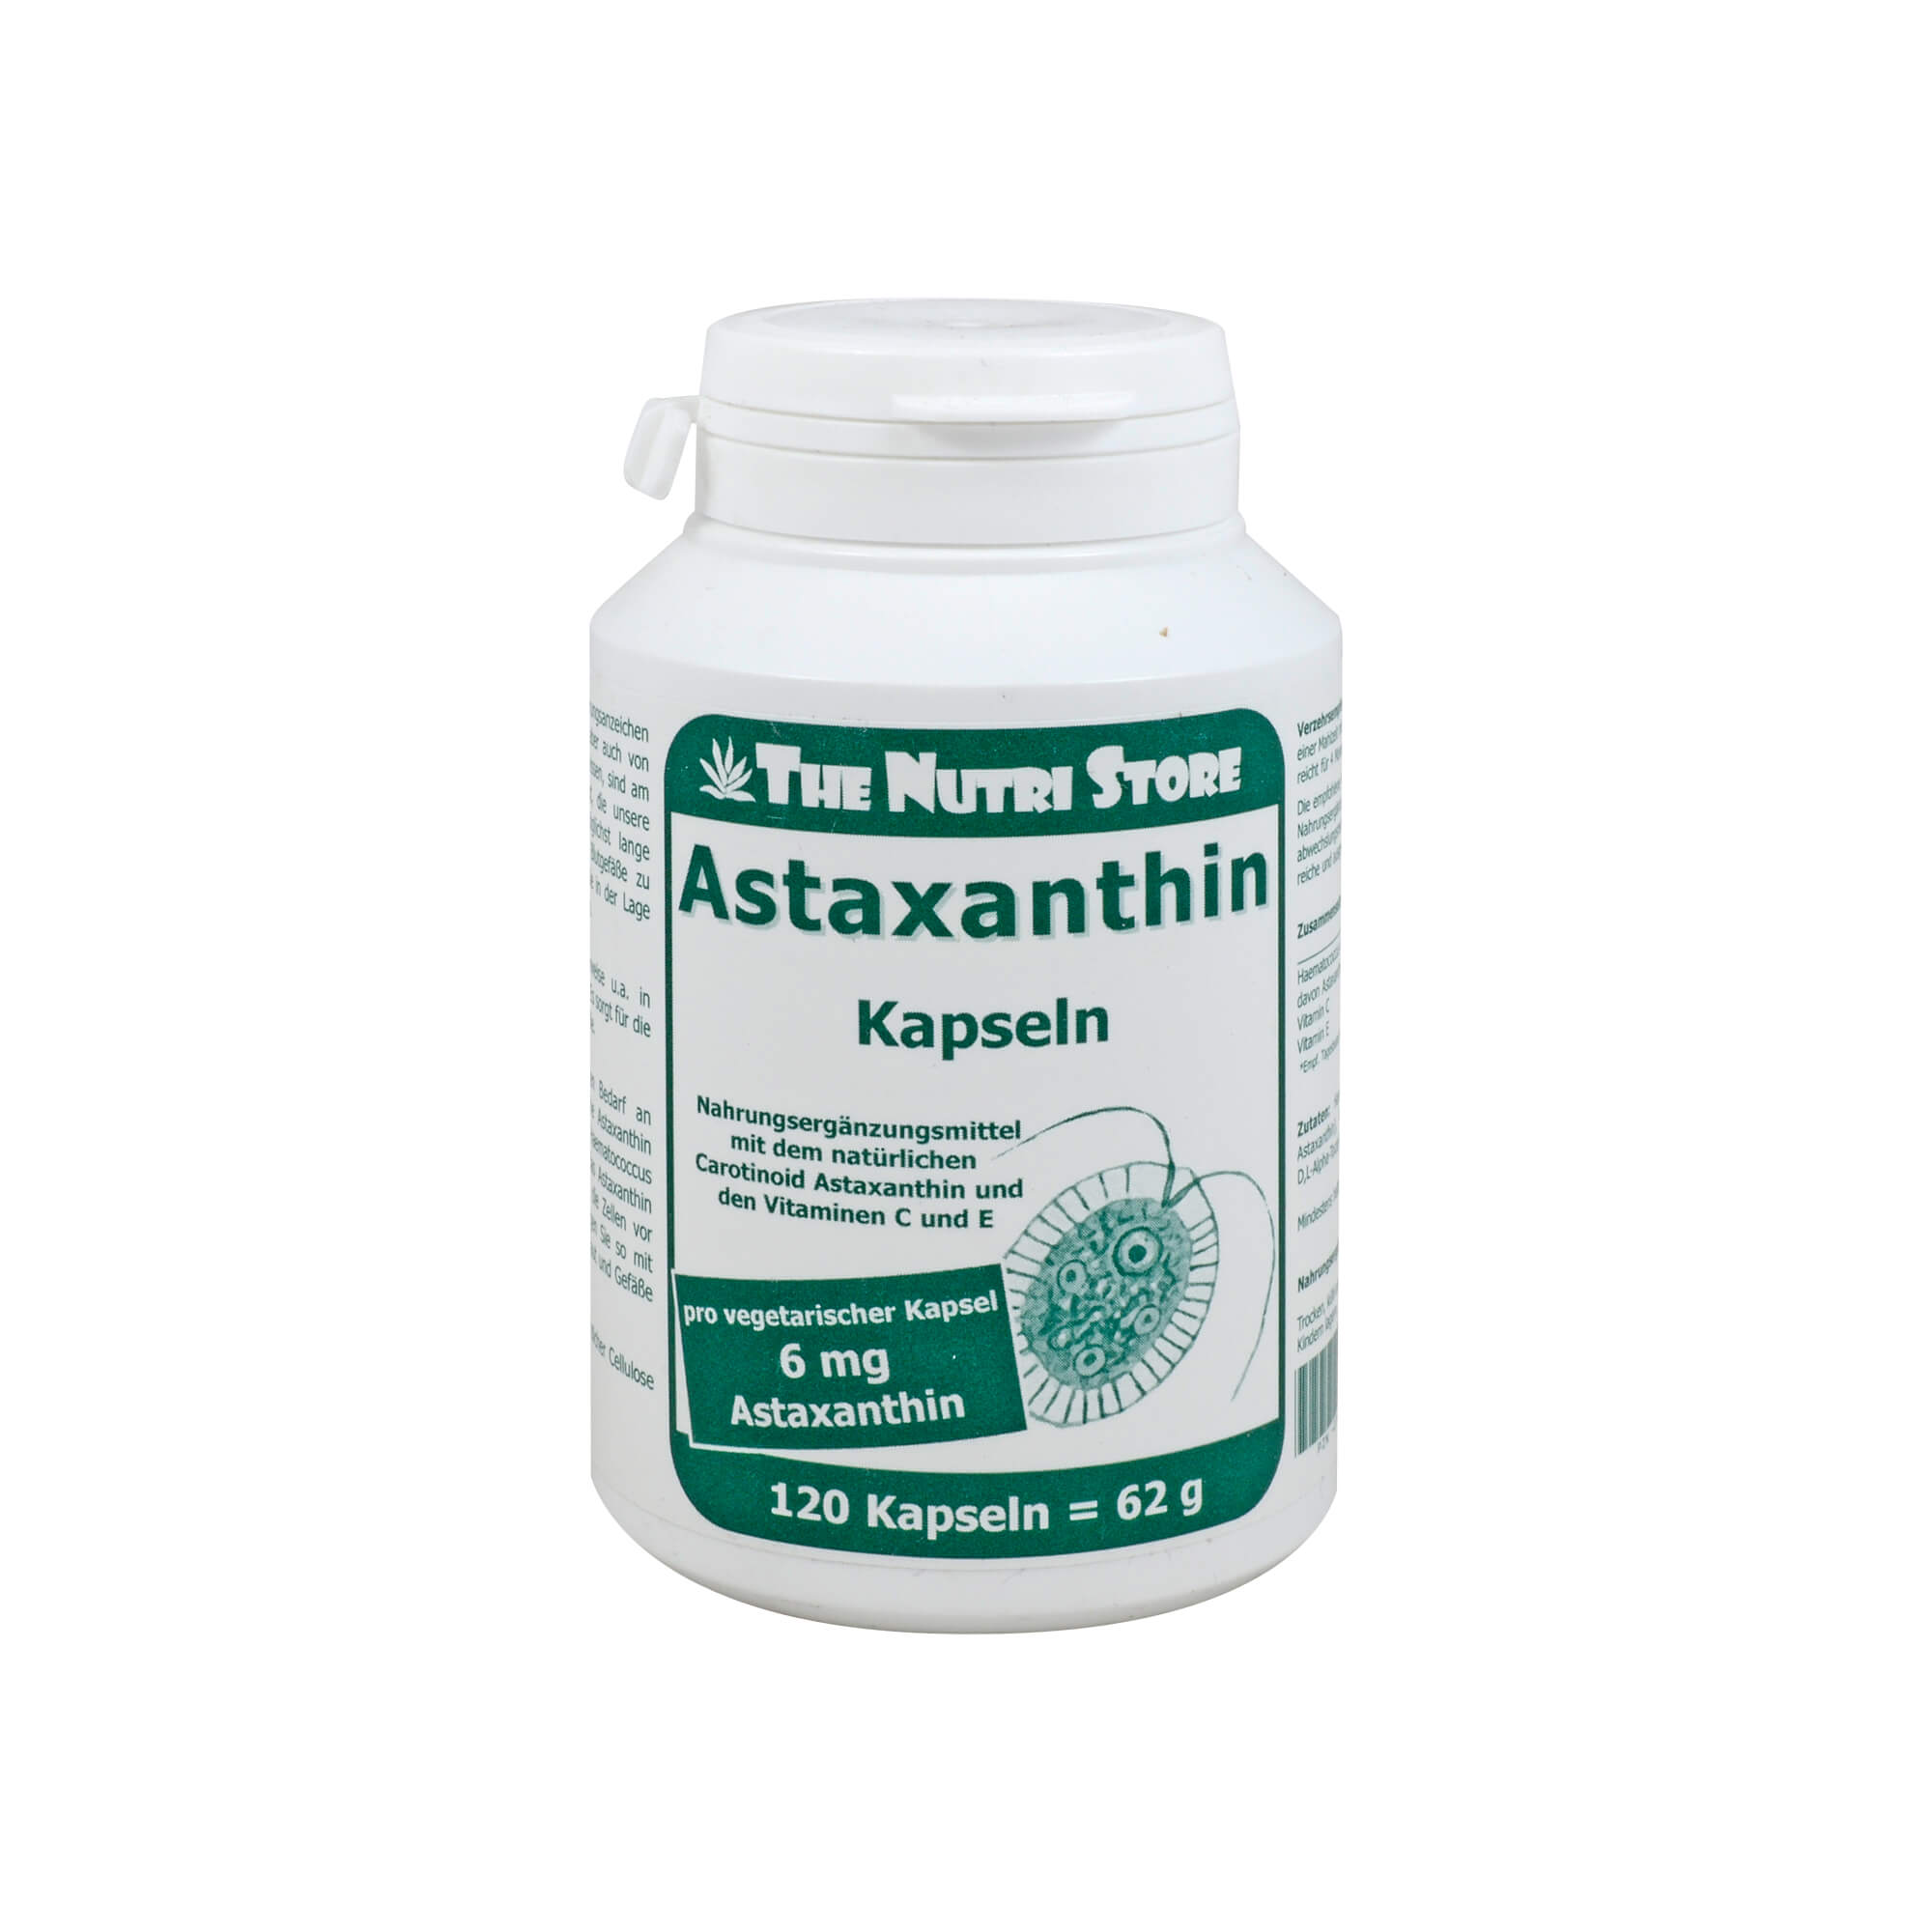 Nahrungsergänzungsmittel mit dem natürlichen Carotinoid Astaxanthin und den Vitaminen C und E.